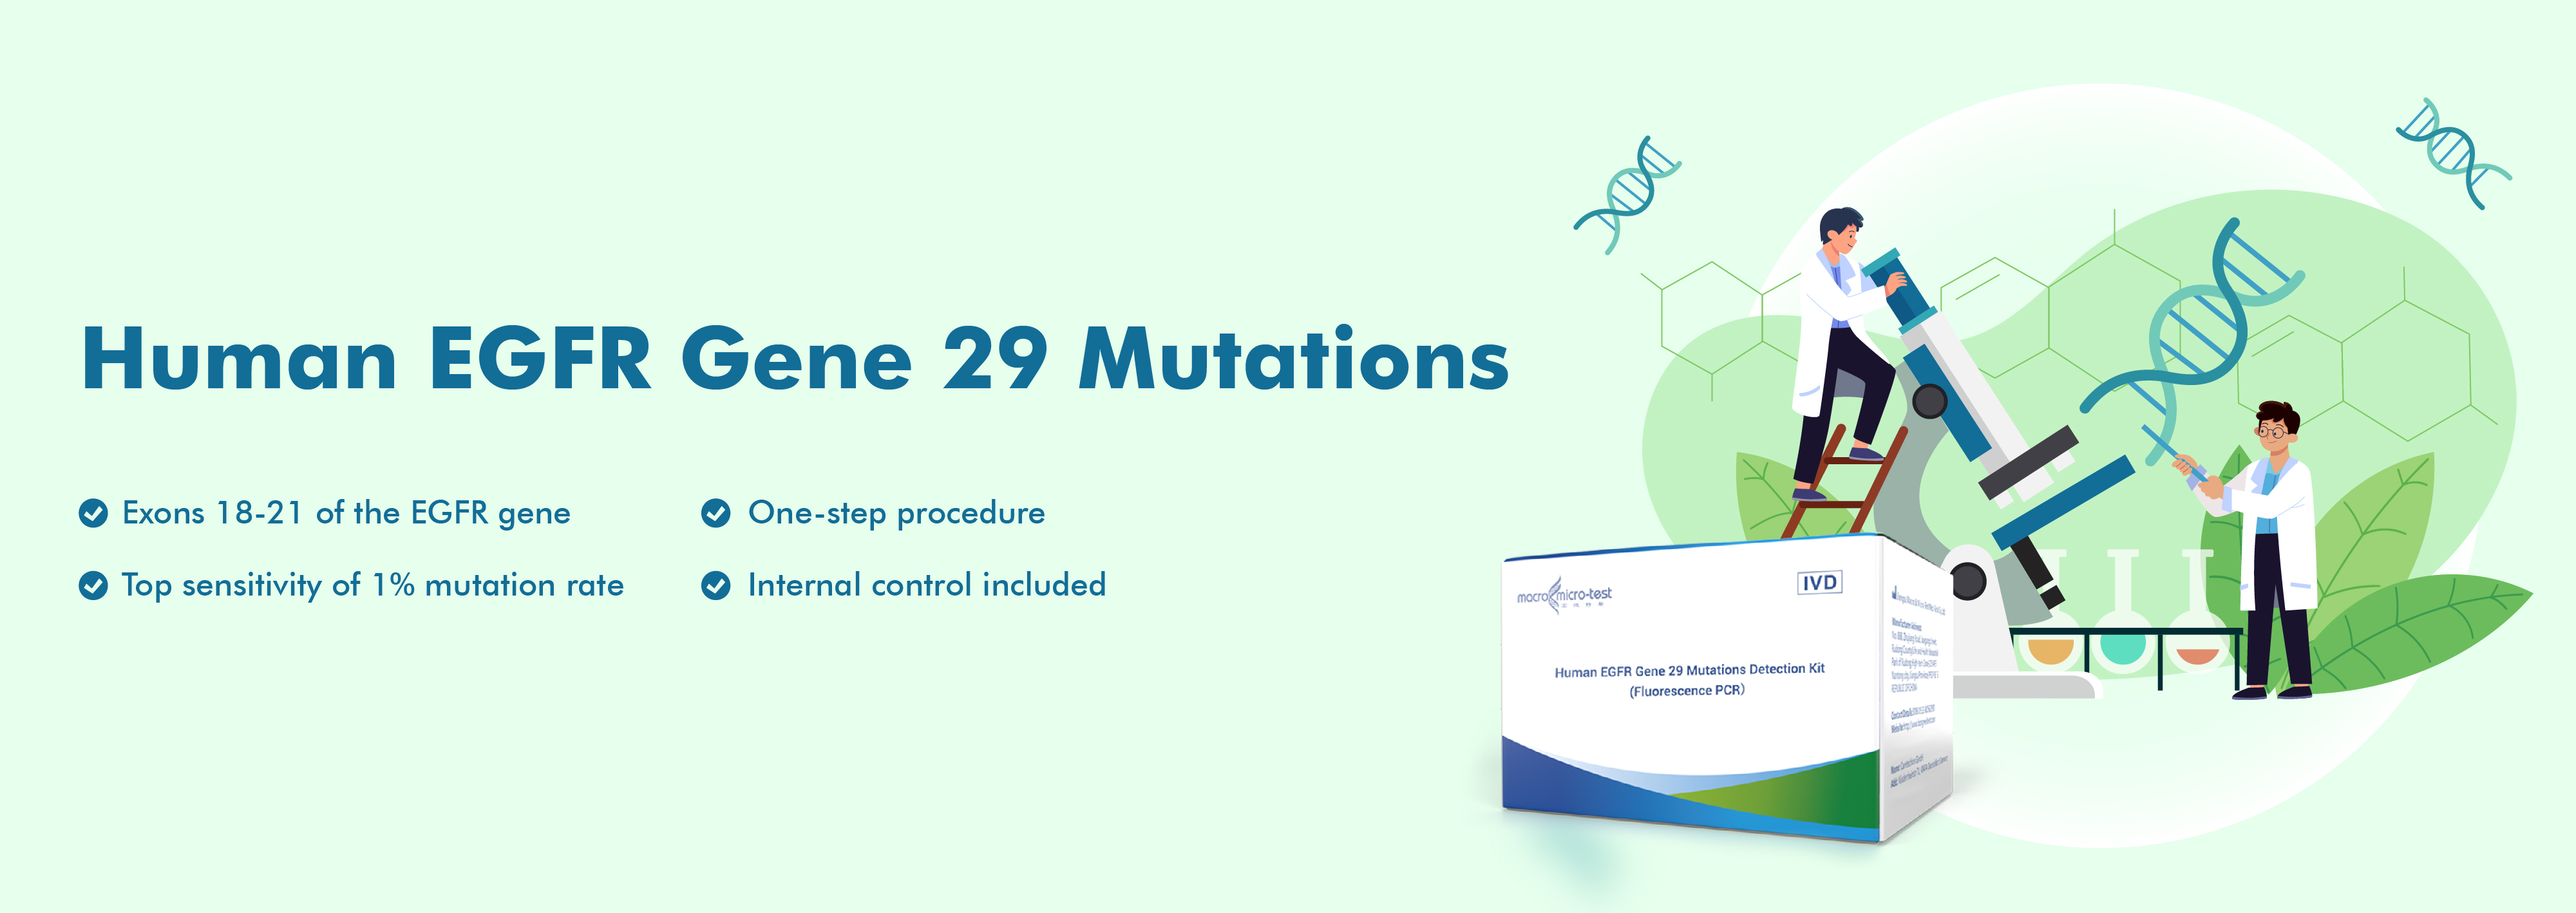 Mutationen des menschlichen EGFR-Gens 29